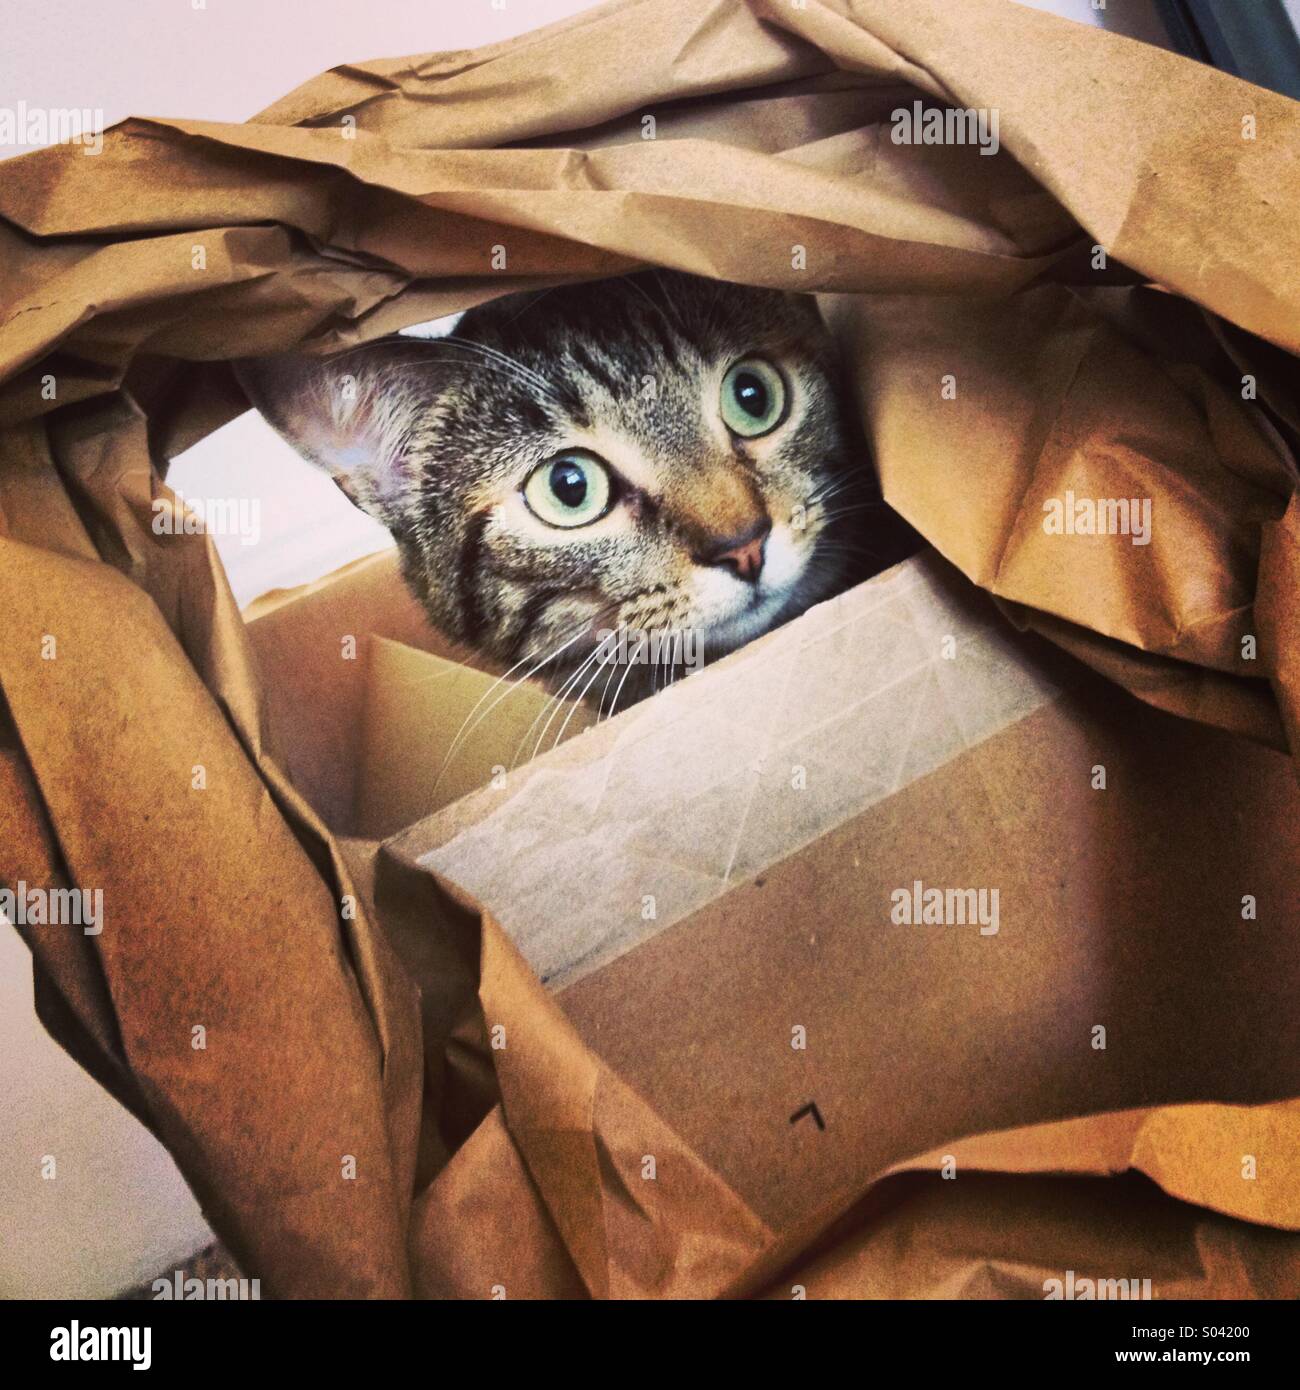 Tabby gattino plaing con la carta in una scatola di cartone. Foto Stock